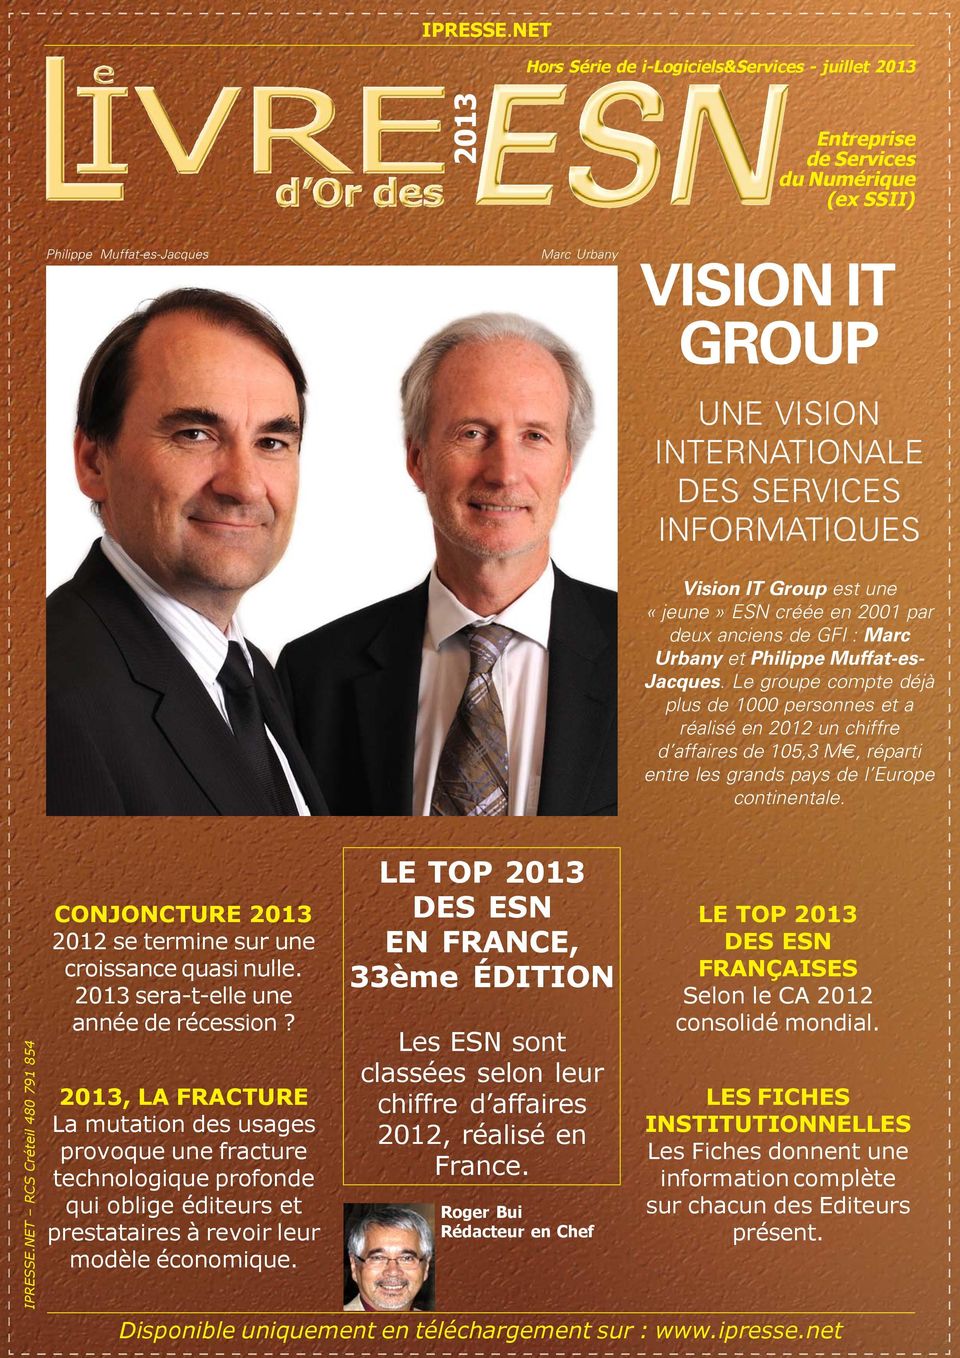 INFORMATIQUES Vision IT Group est une «jeune» ESN créée en 2001 par deux anciens de GFI : Marc Urbany et Philippe Muffat-es- Jacques.